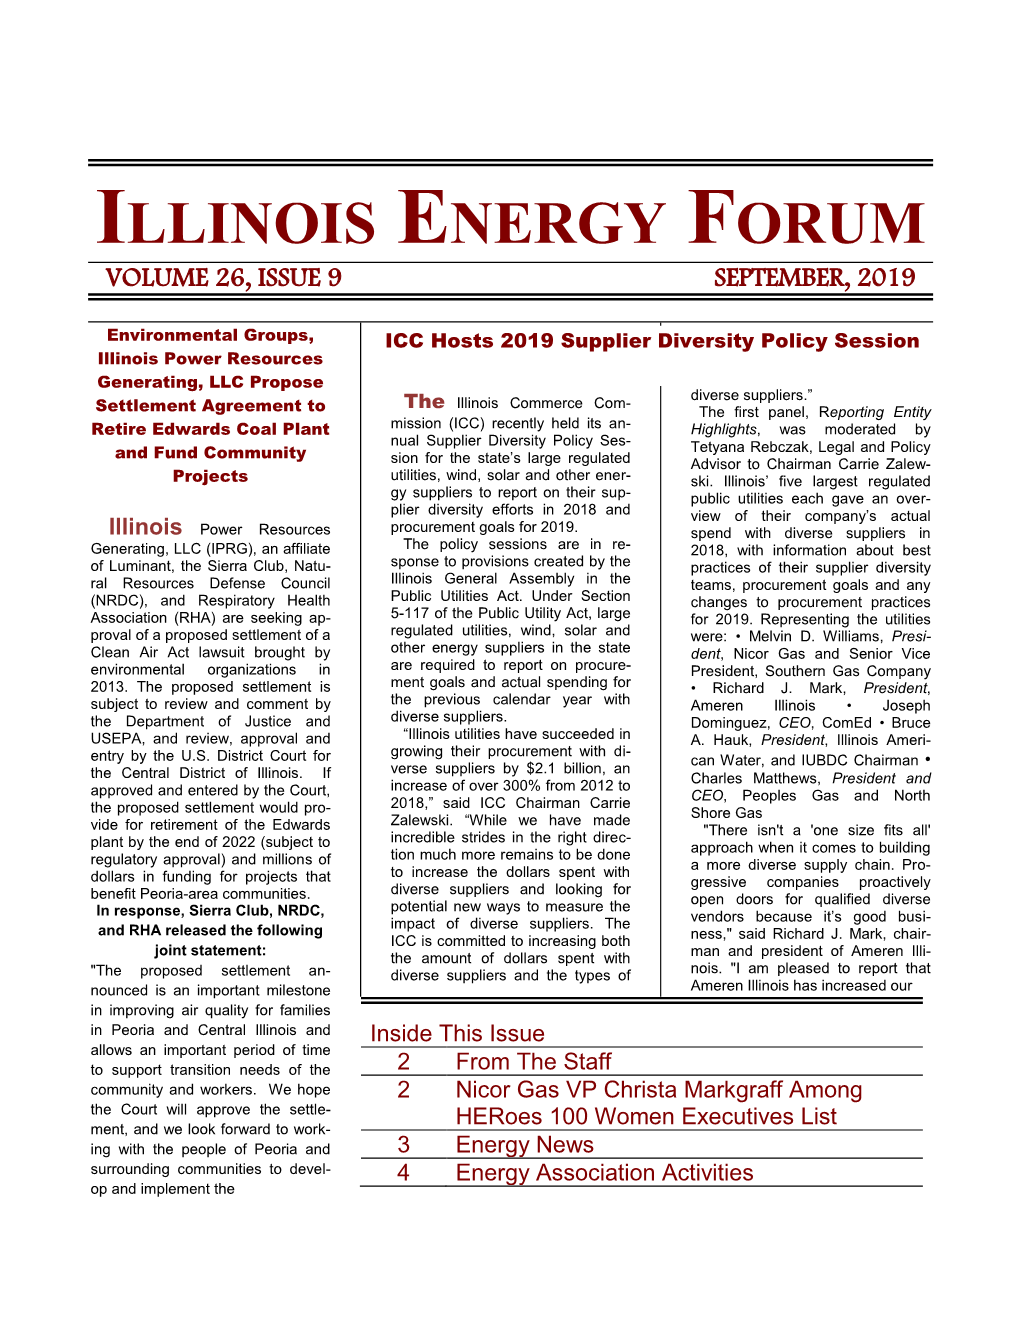 Illinois Energy Forum Volume 26, Issue 9 September, 2019